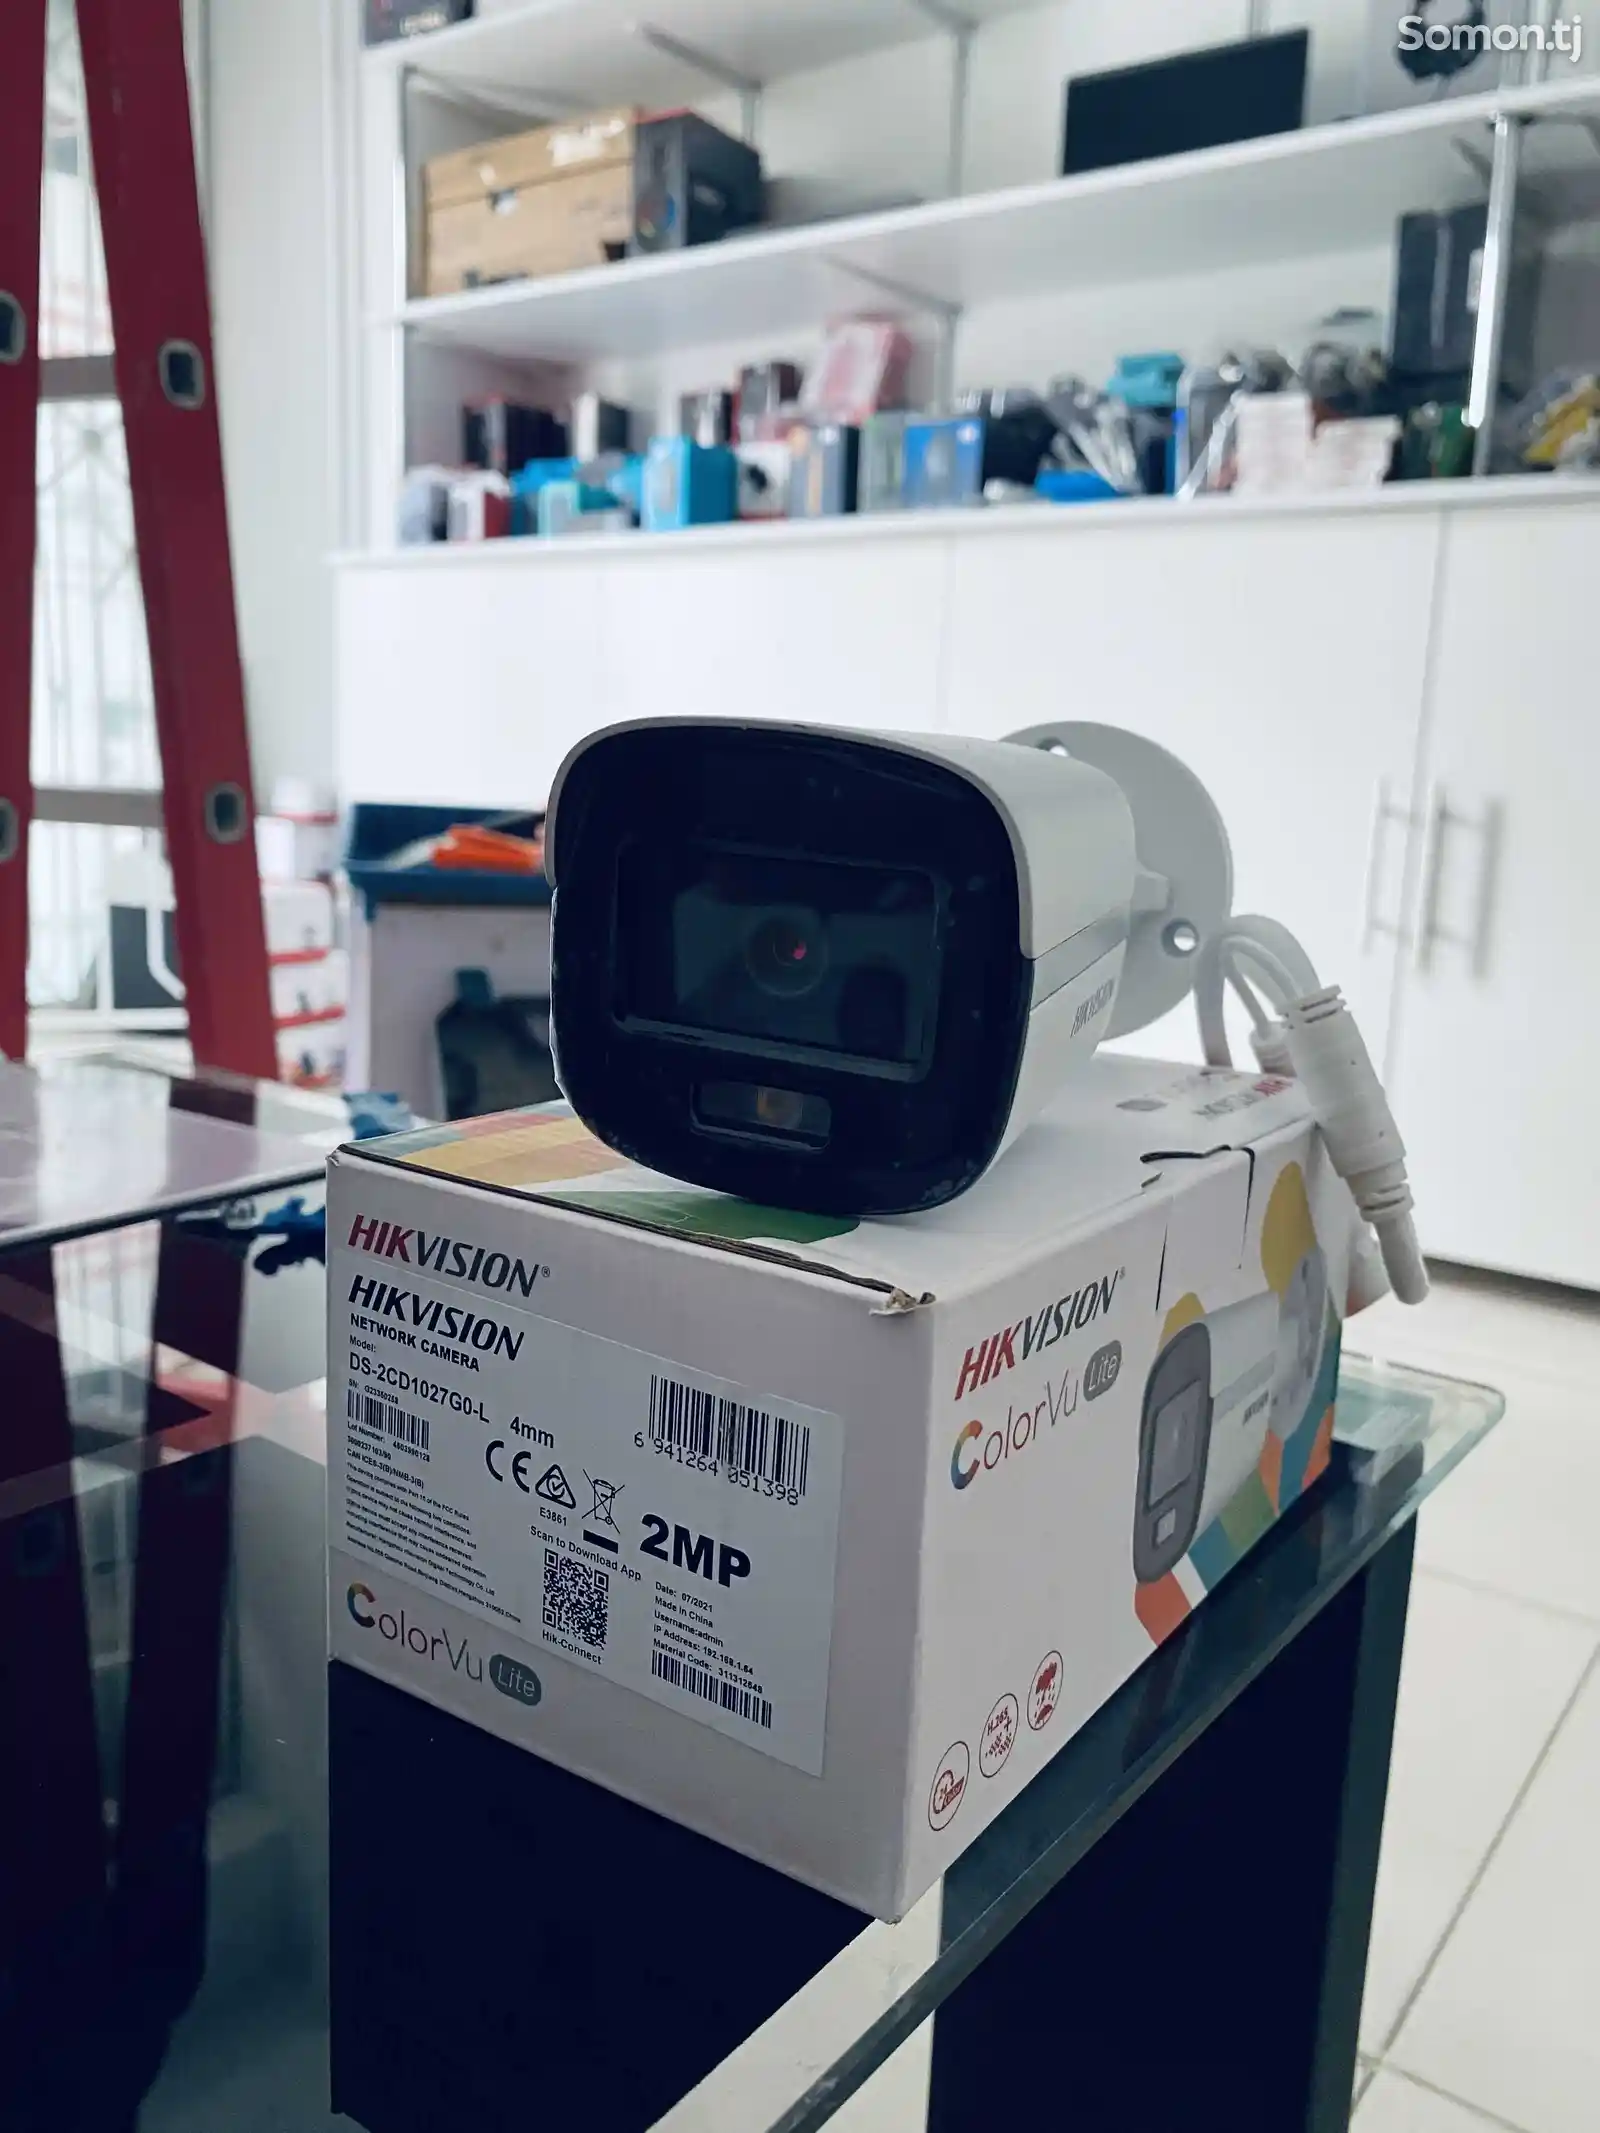 Камера видеонаблюдения Hikvision IP 2MP Color Vu-1